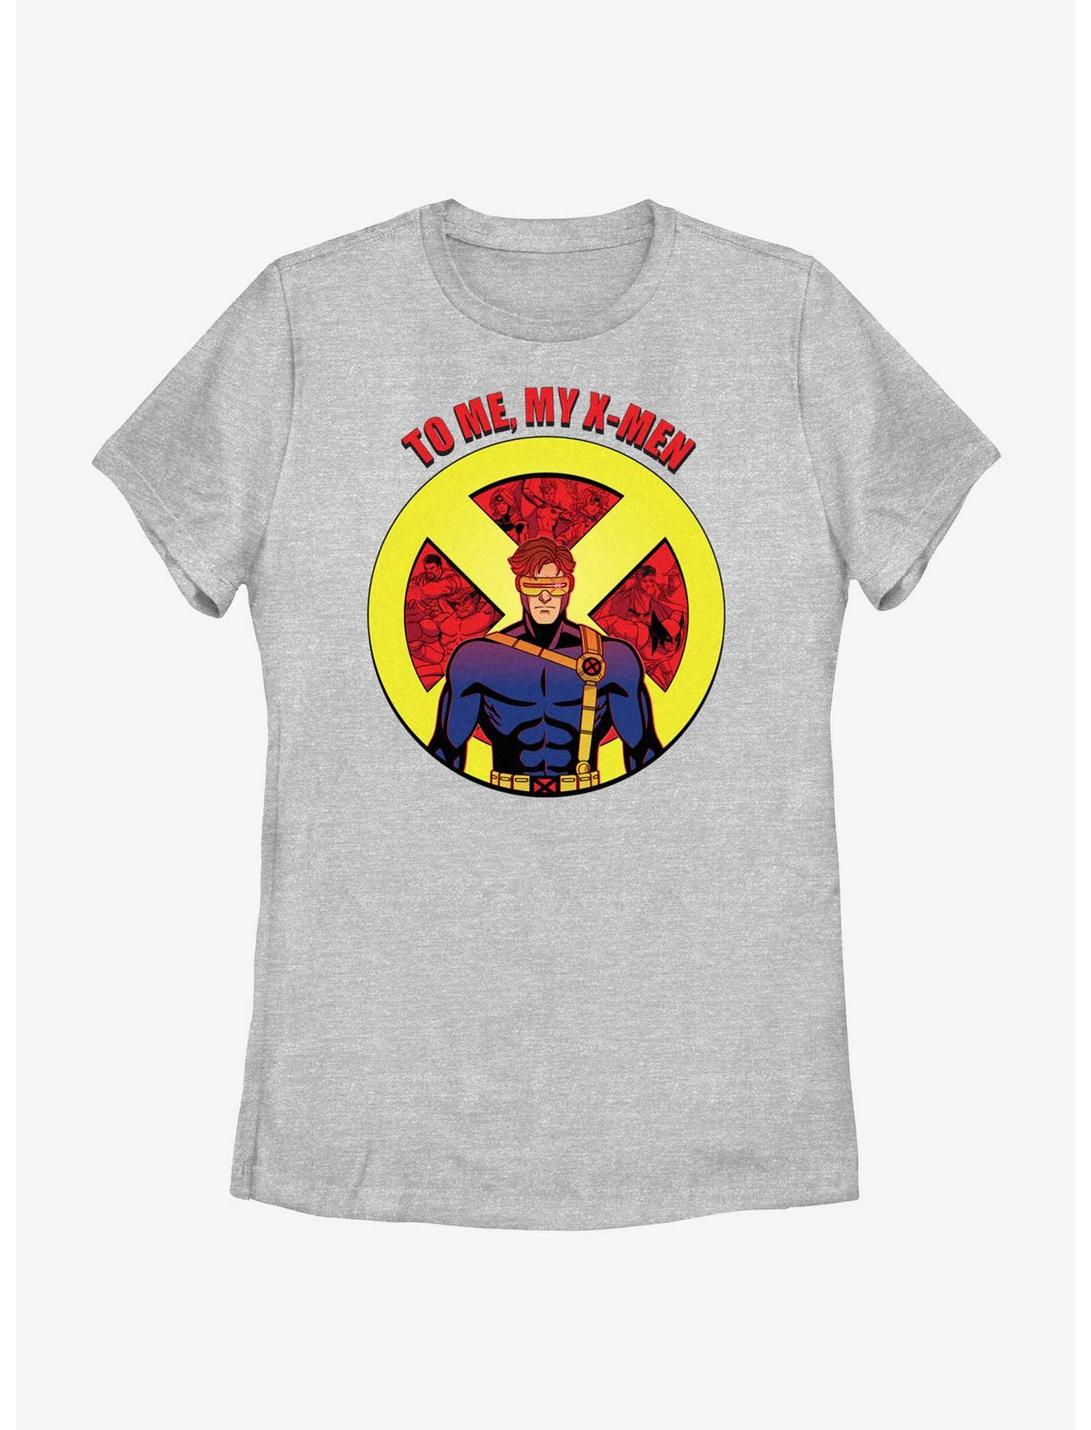 Marvel X-Men '97 To Me My X Men Cyclops Womens T-Shirt, ATH HTR, hi-res